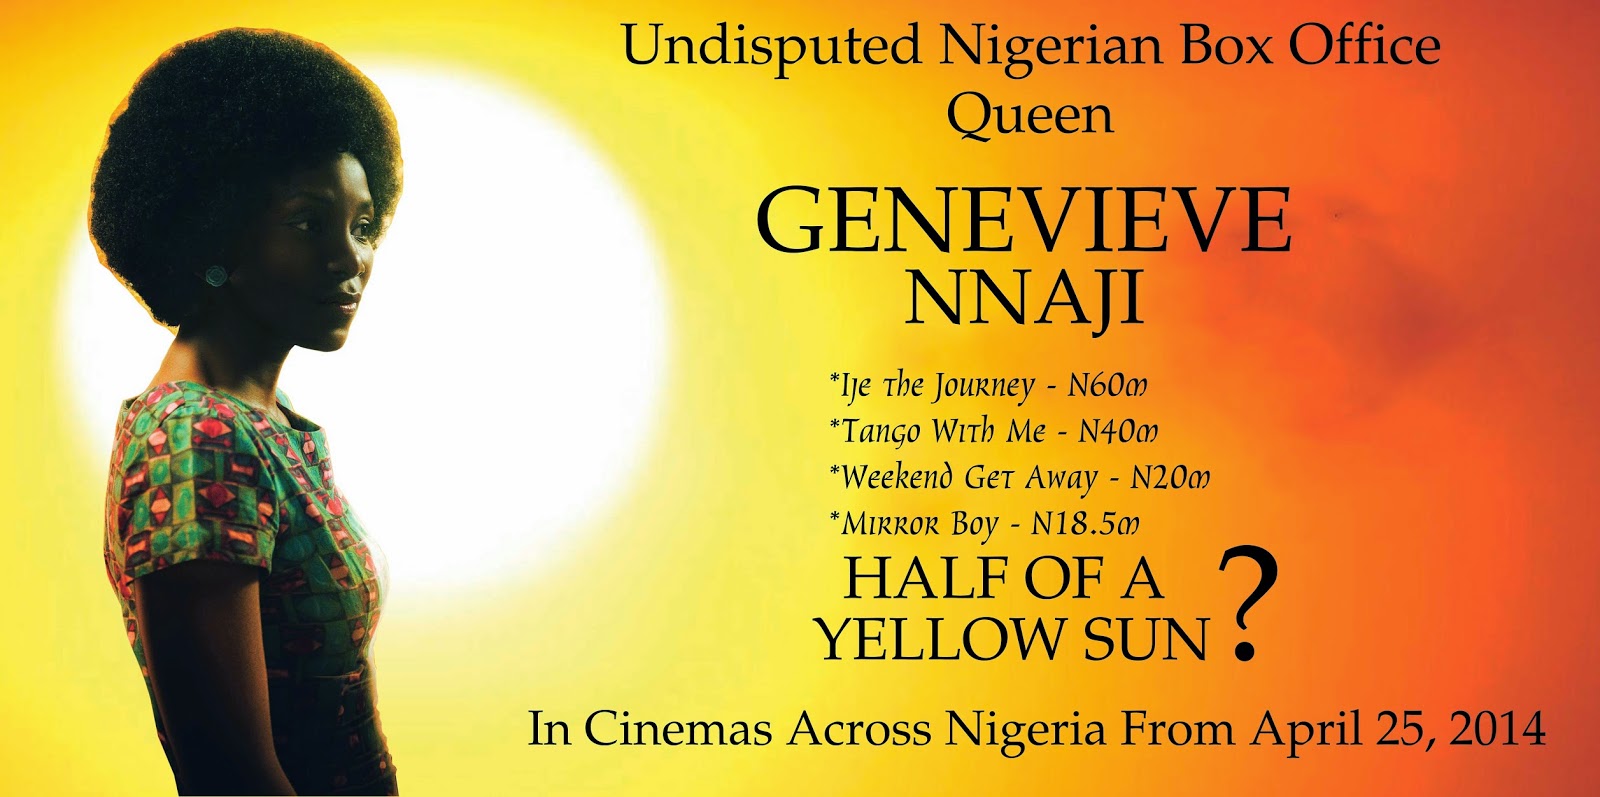 half of a yellow sun movie premiere nigeria